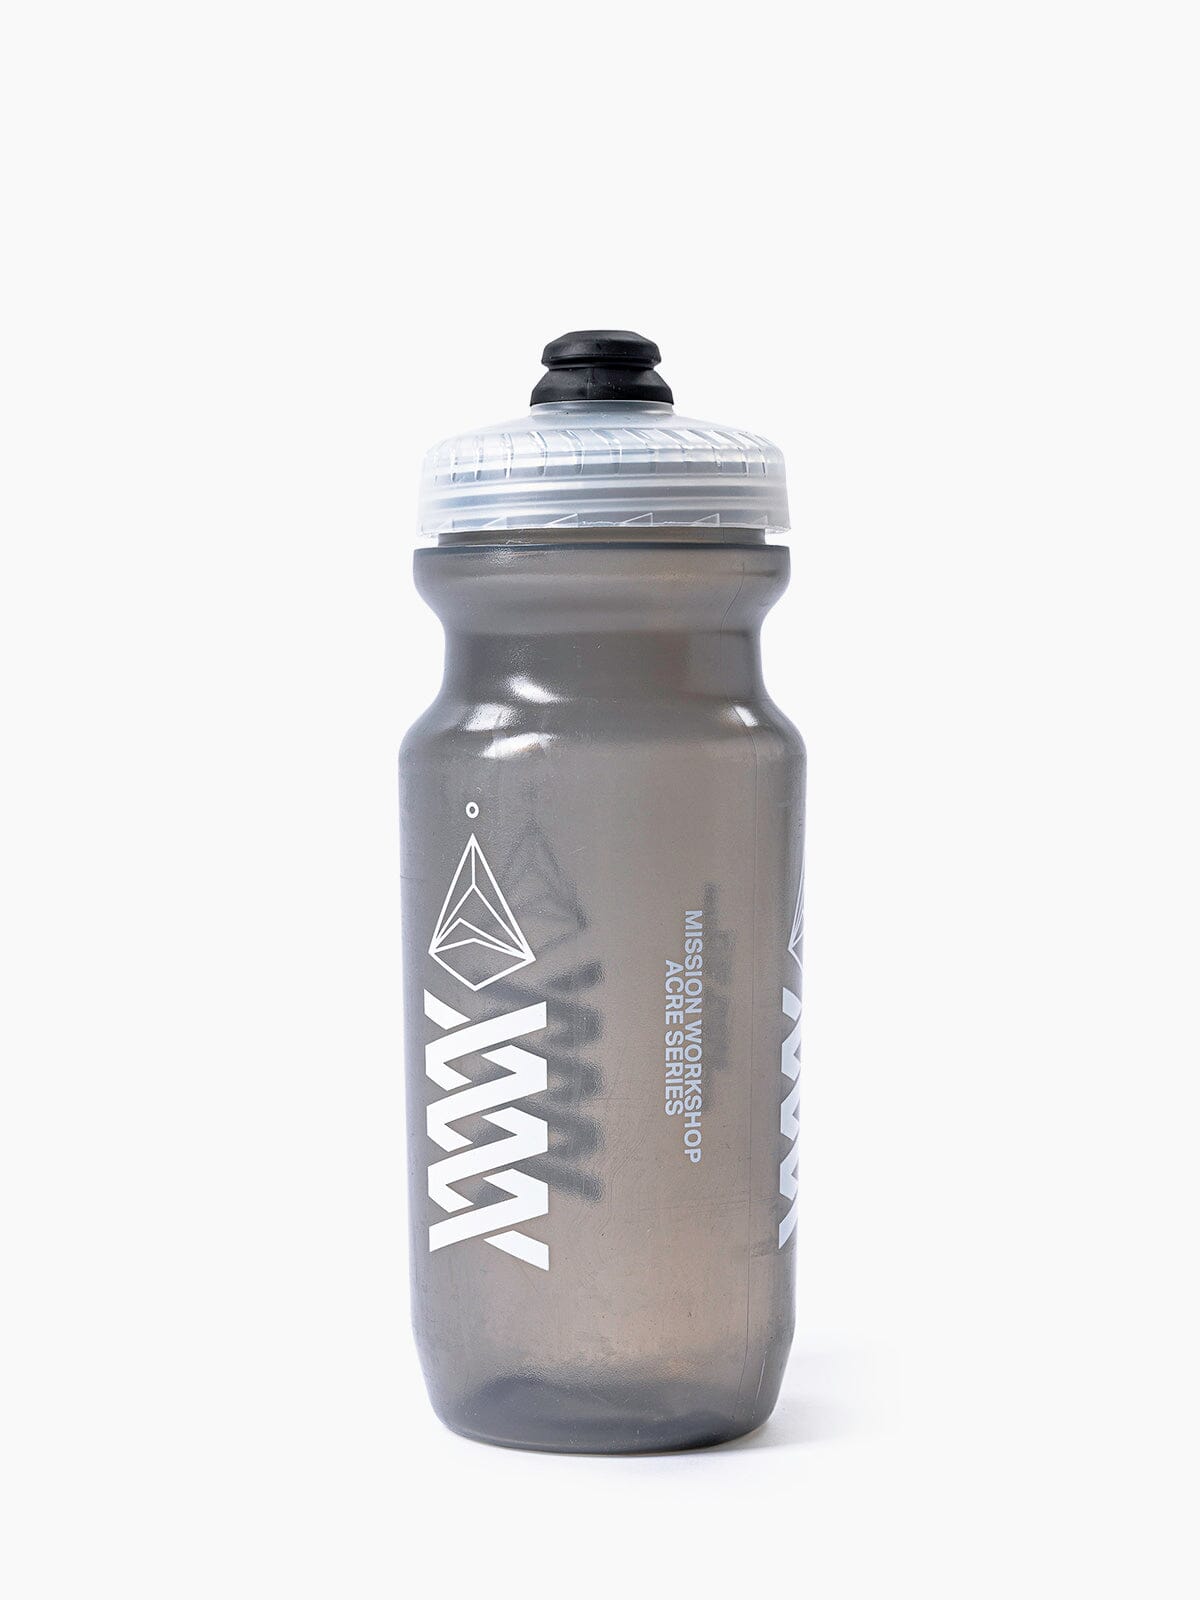 Acre Series Water Bottle by Mission Workshop - Weatherproof Bags & Technical Apparel - San Francisco & Los Angeles - Construit pour durer - Garanti pour toujours